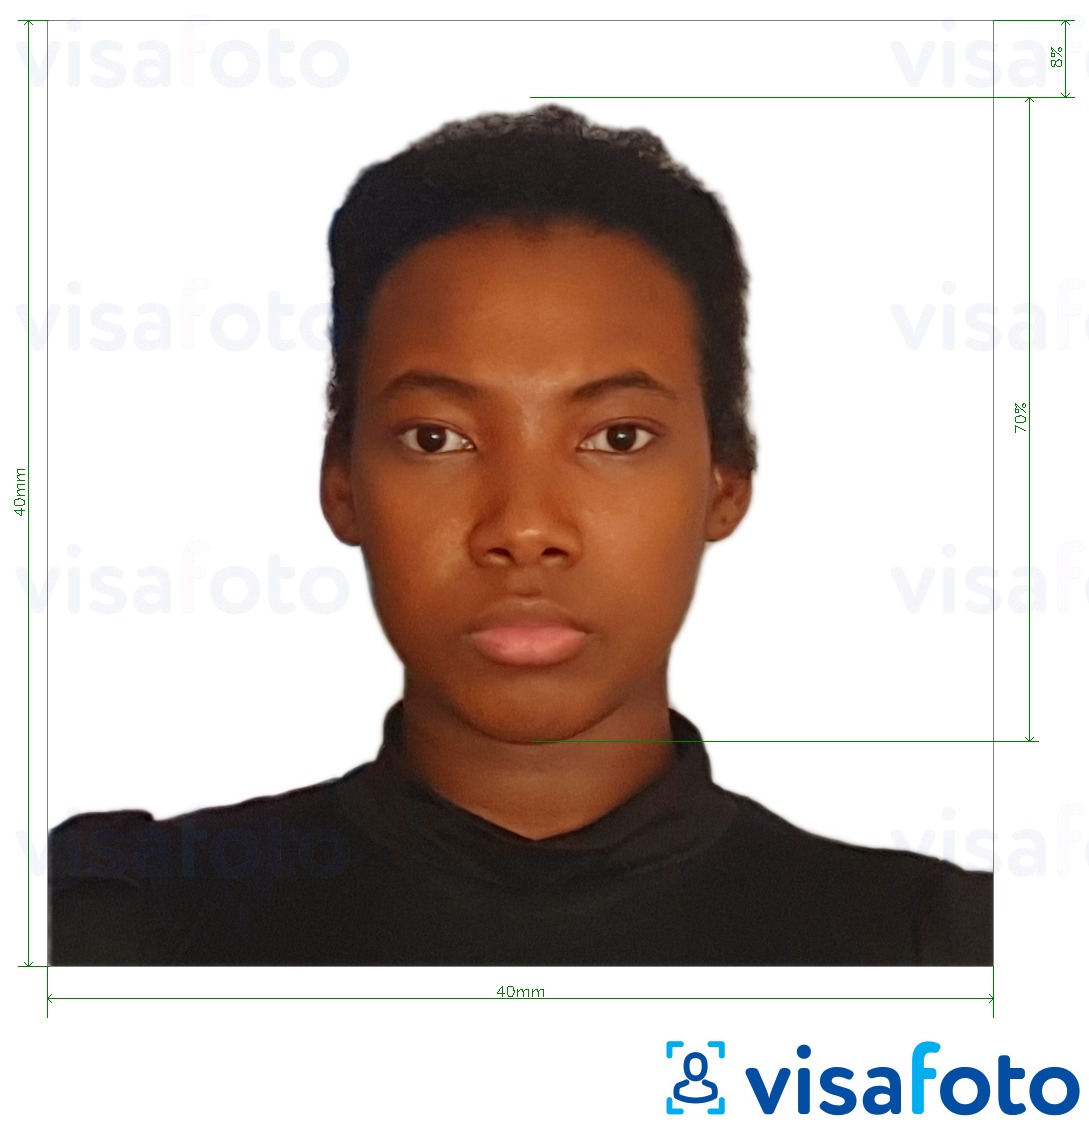 Eksempel på billede for Madagaskar ID-kort 40x40 mm med præcis størrelsesspecifikation.